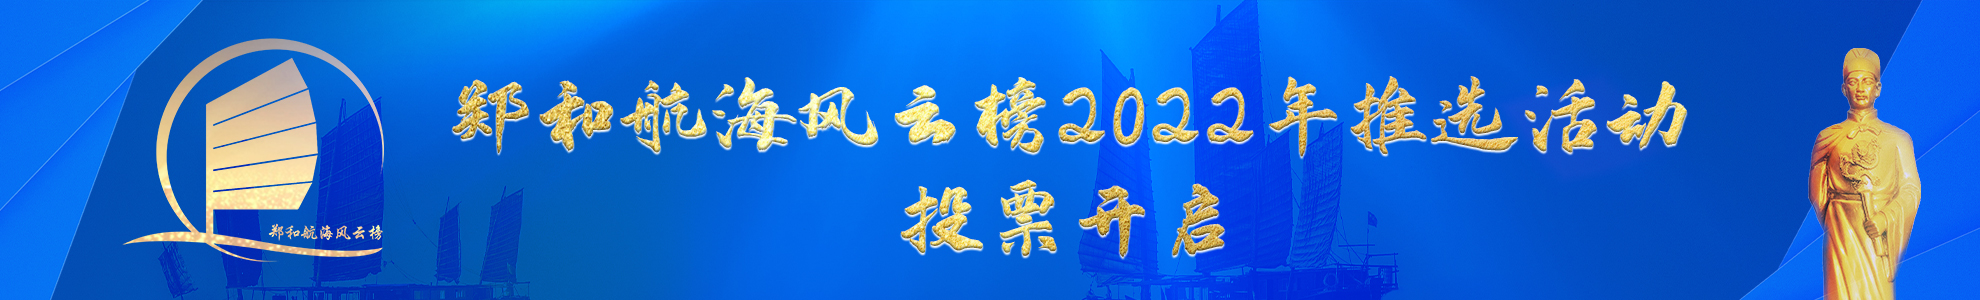 郑和航海风云榜2022年推选活动正式启动